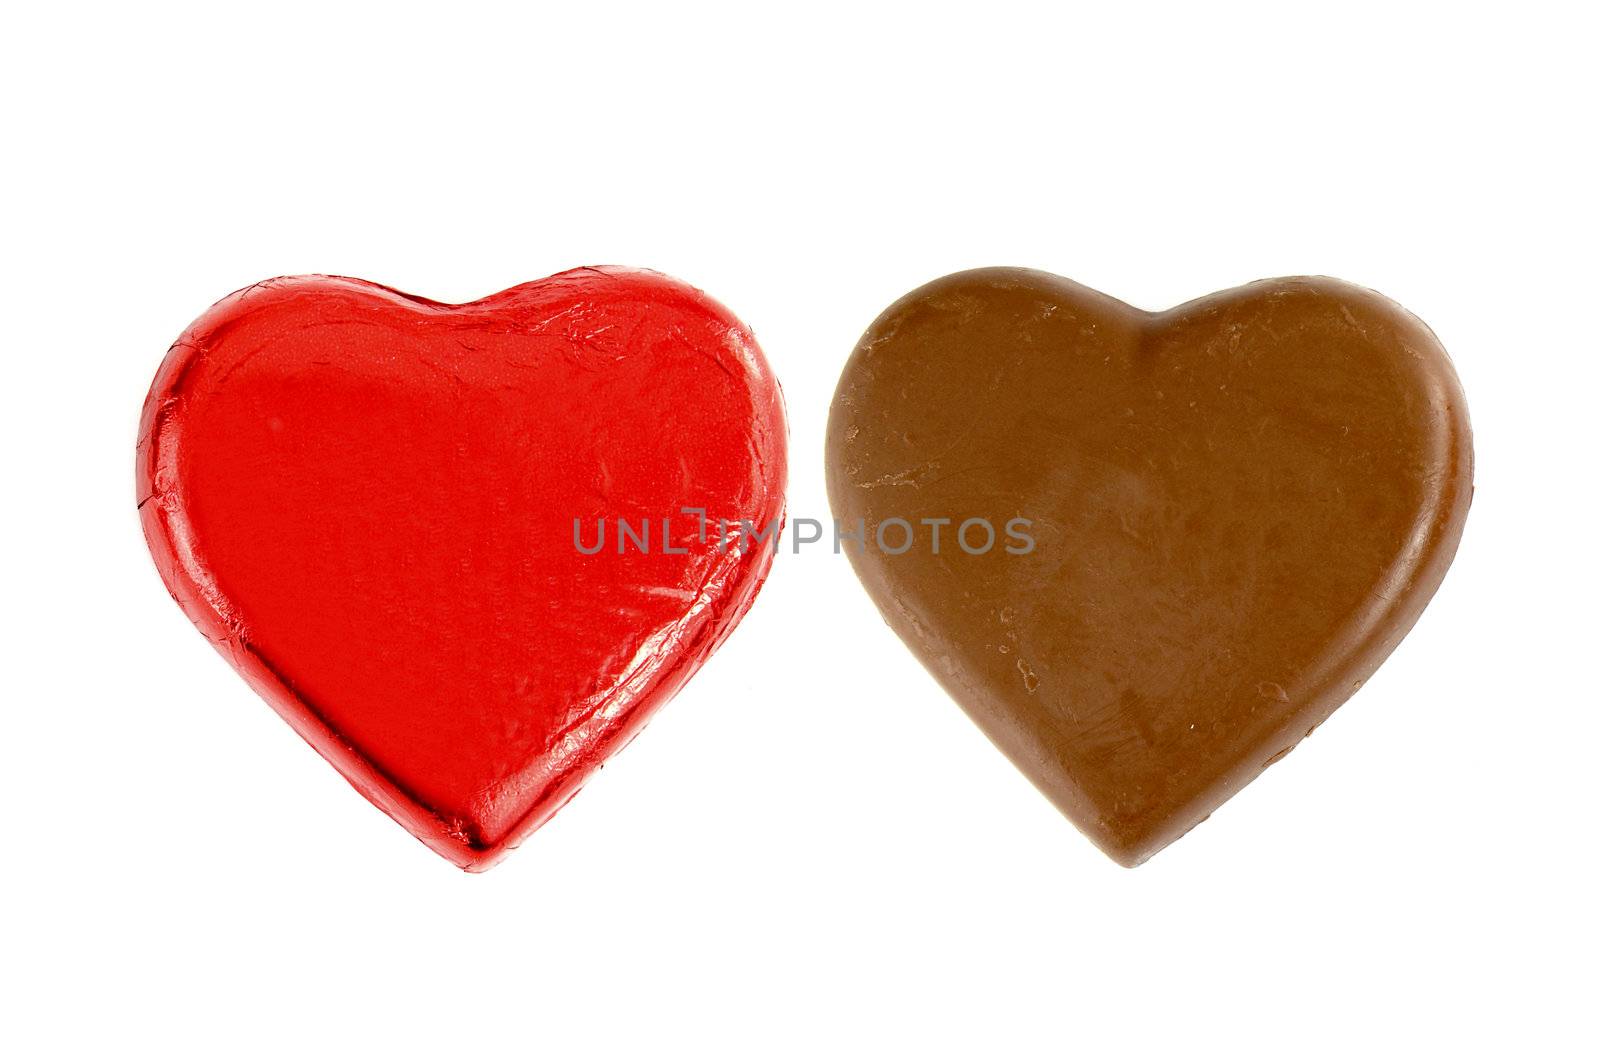 chocolates, Heart shape, isolate on white background